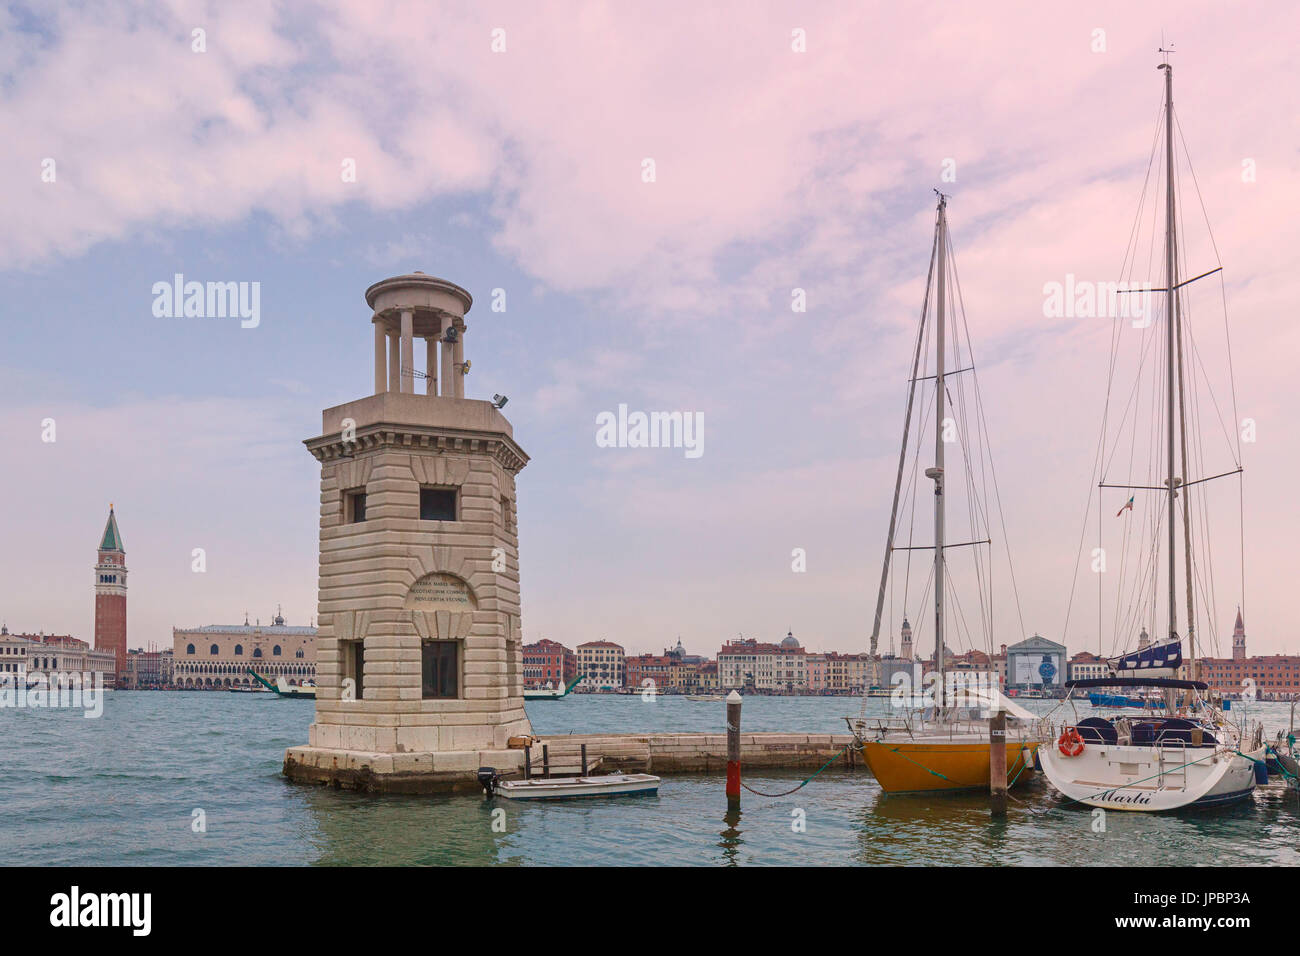 L'Europe, Italie, Vénétie, Venise, l'île de San Giorgio Maggiore. L'un des projecteurs du quai et des bateaux amarrés Banque D'Images